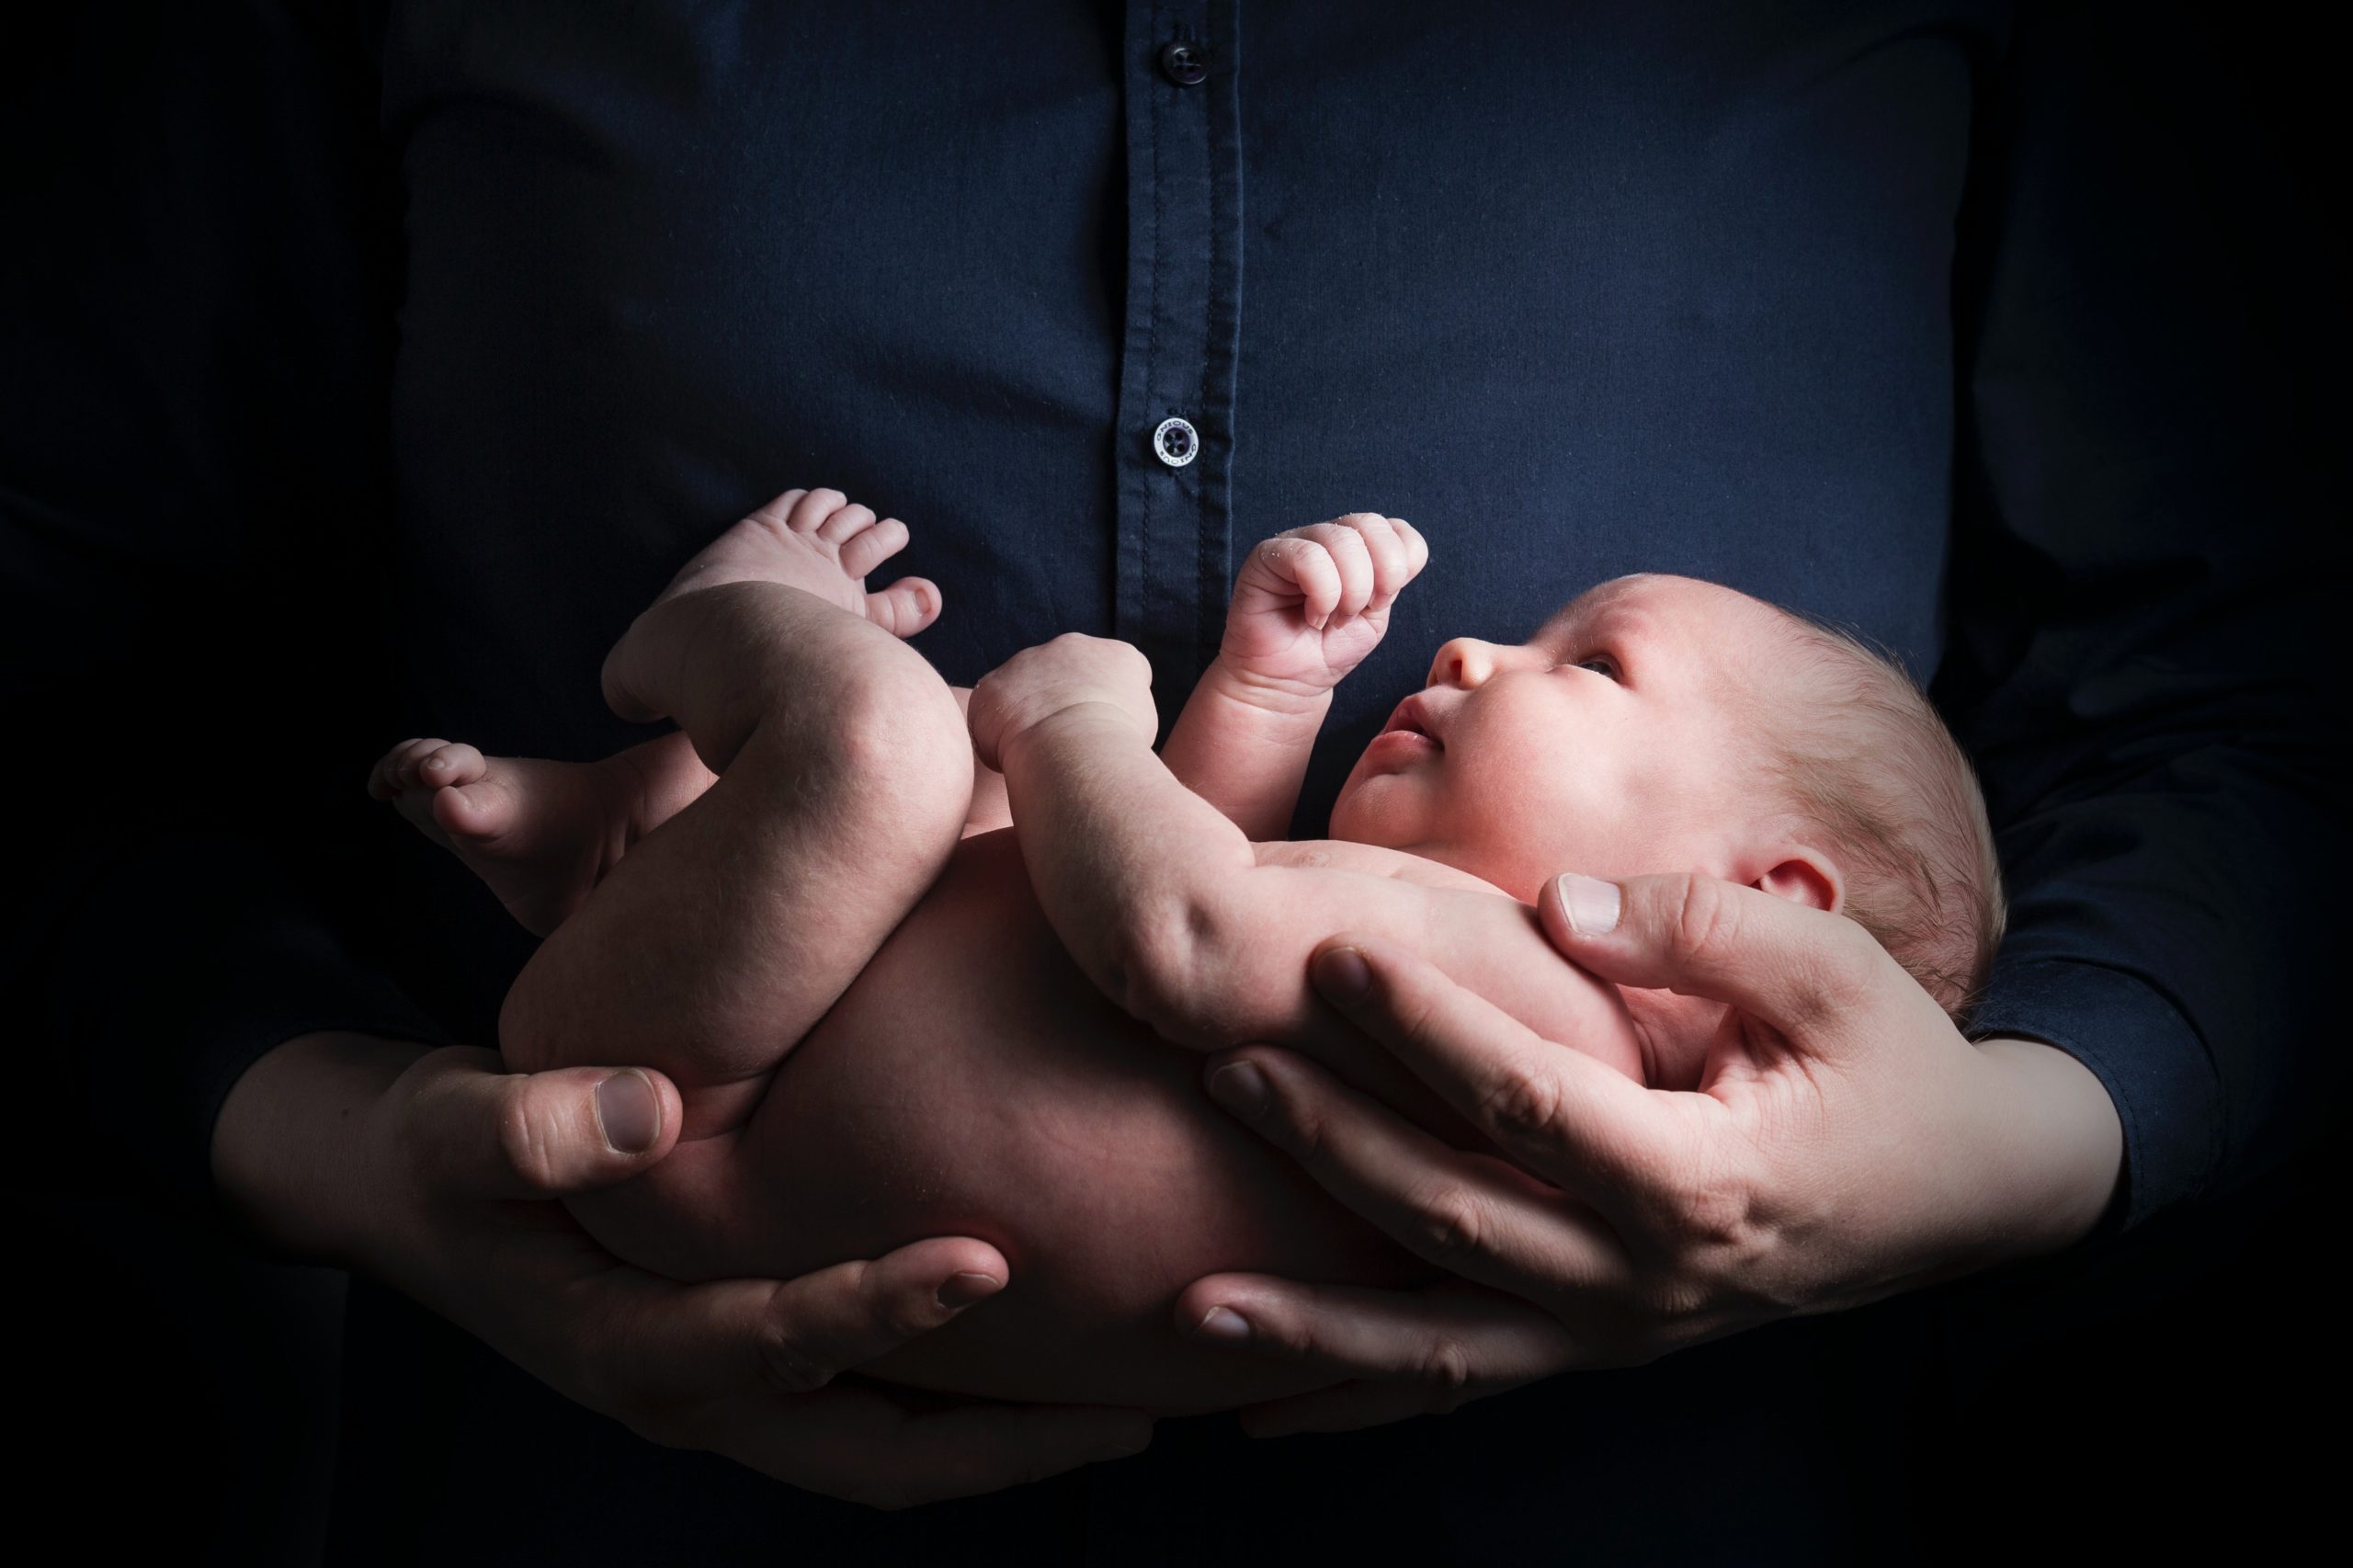 La distocia de hombros es una de las principales preocupaciones obstétricas de los partos en la actualidad. Foto: Rene Asmussen/Pexels.